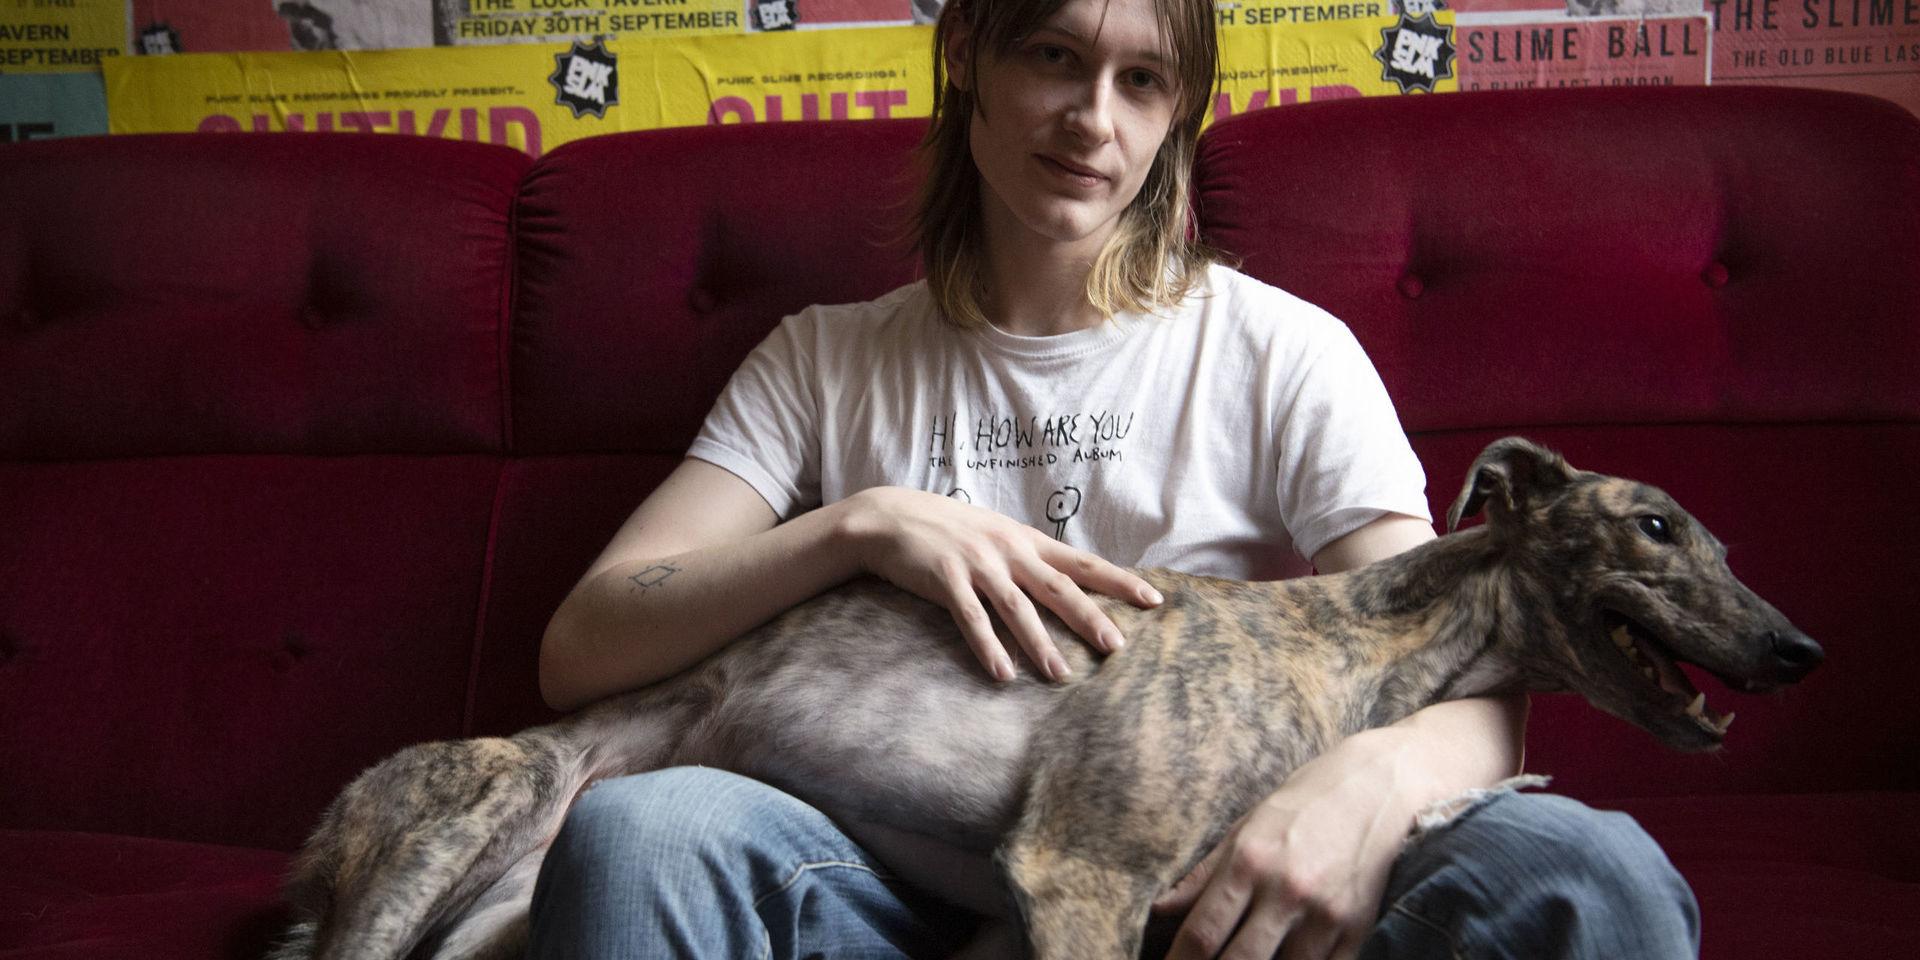 Hunden Blurr vilar i husse Hannes Ferms knä, i väntan på att Holys nya album 'Ryder' ska släppas.